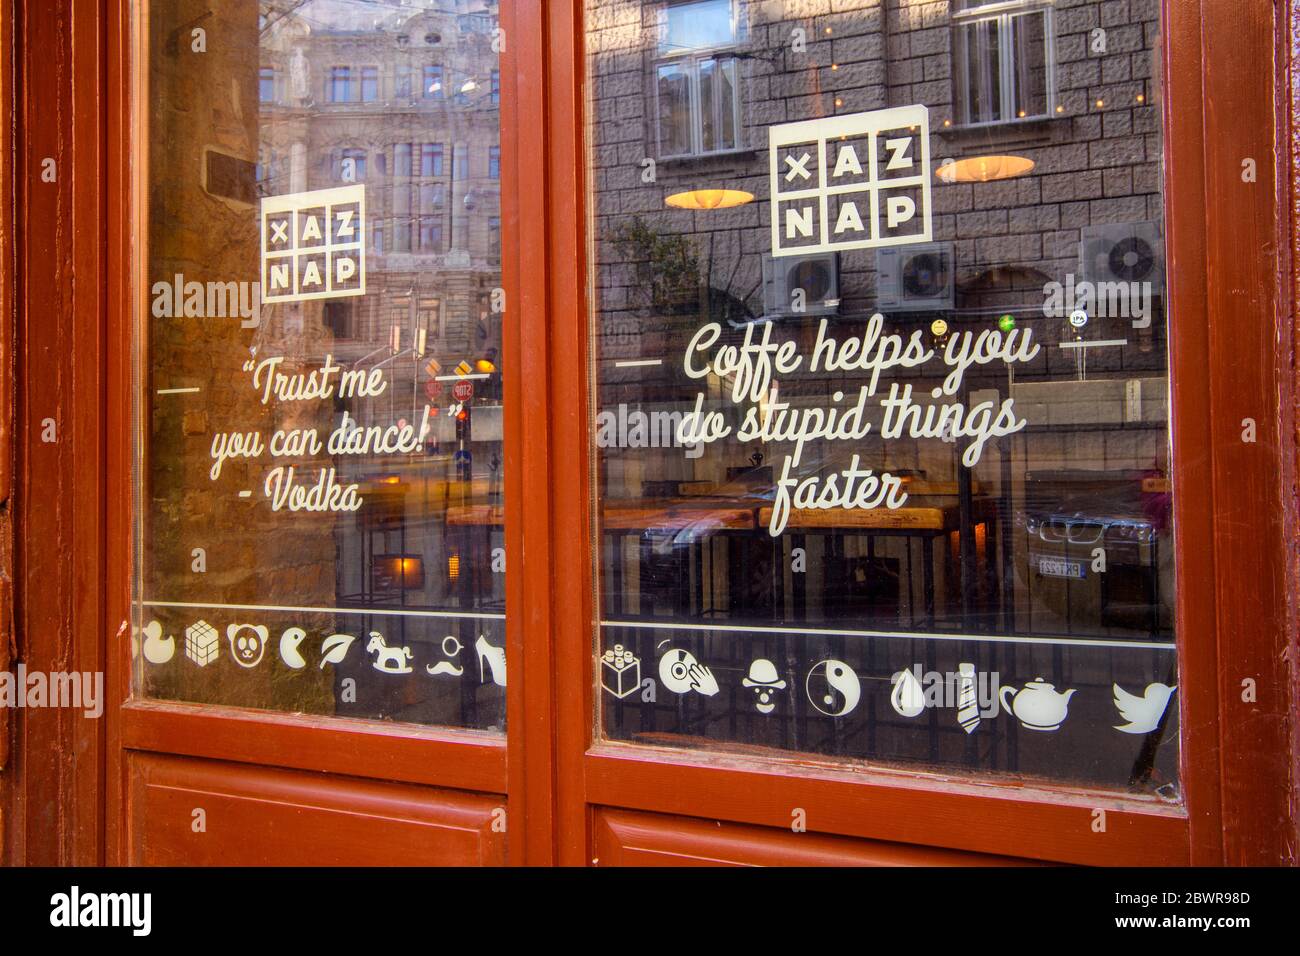 Centro de Budapest (Pest) - carteles en una ventana de la tienda, Budapest, Hungría Central. Foto de stock